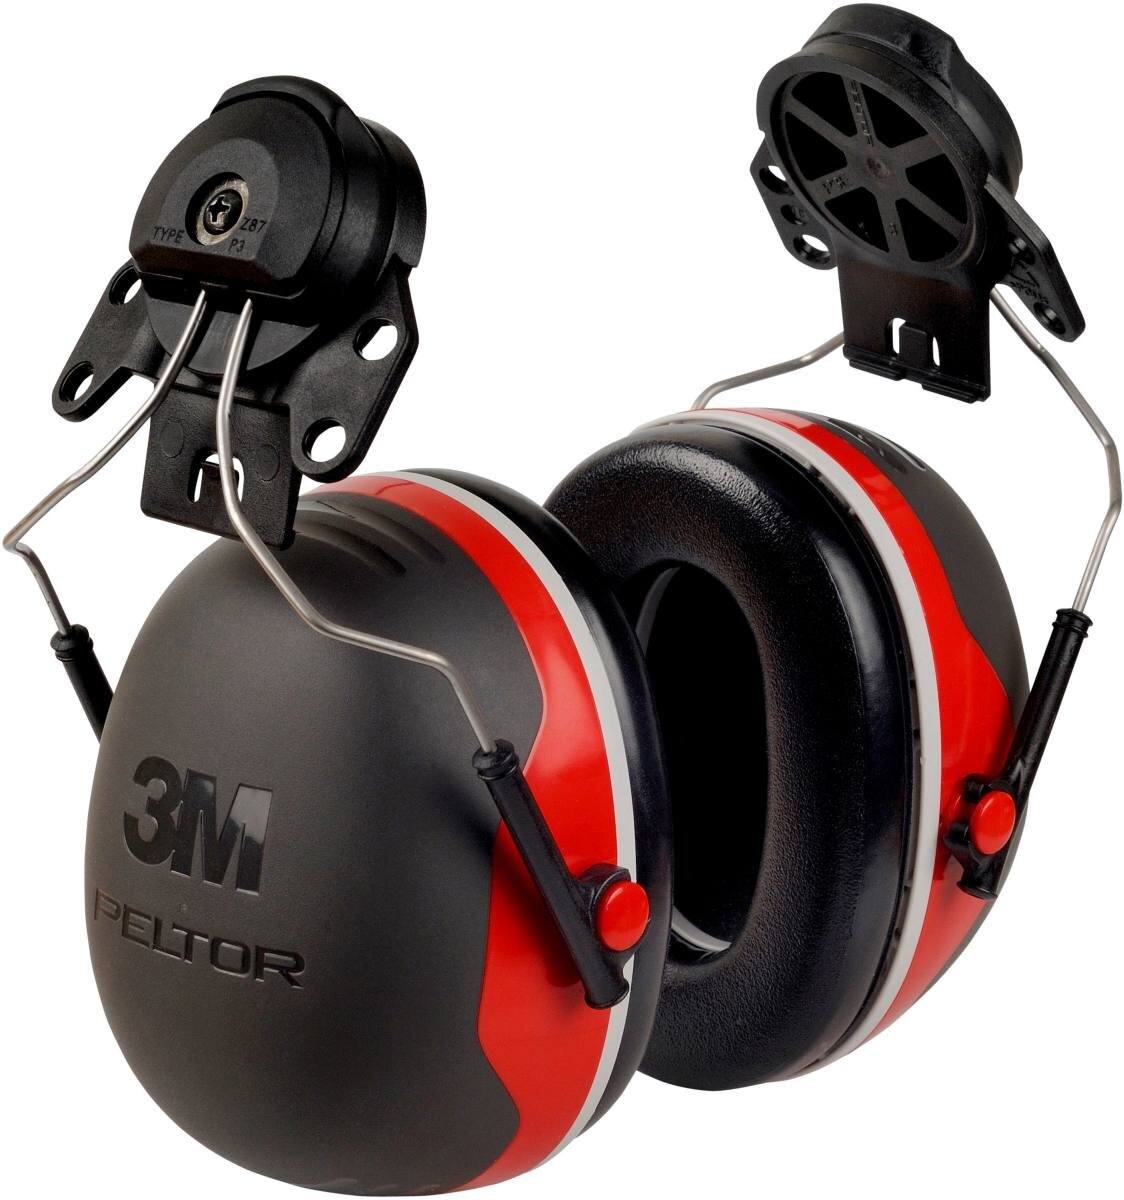 3M Peltor casque antibruit, X3P3E fixation pour casque, rouge, SNR = 32 dB avec adaptateur pour casque P3E (pour tous les casques 3M, sauf G2000)